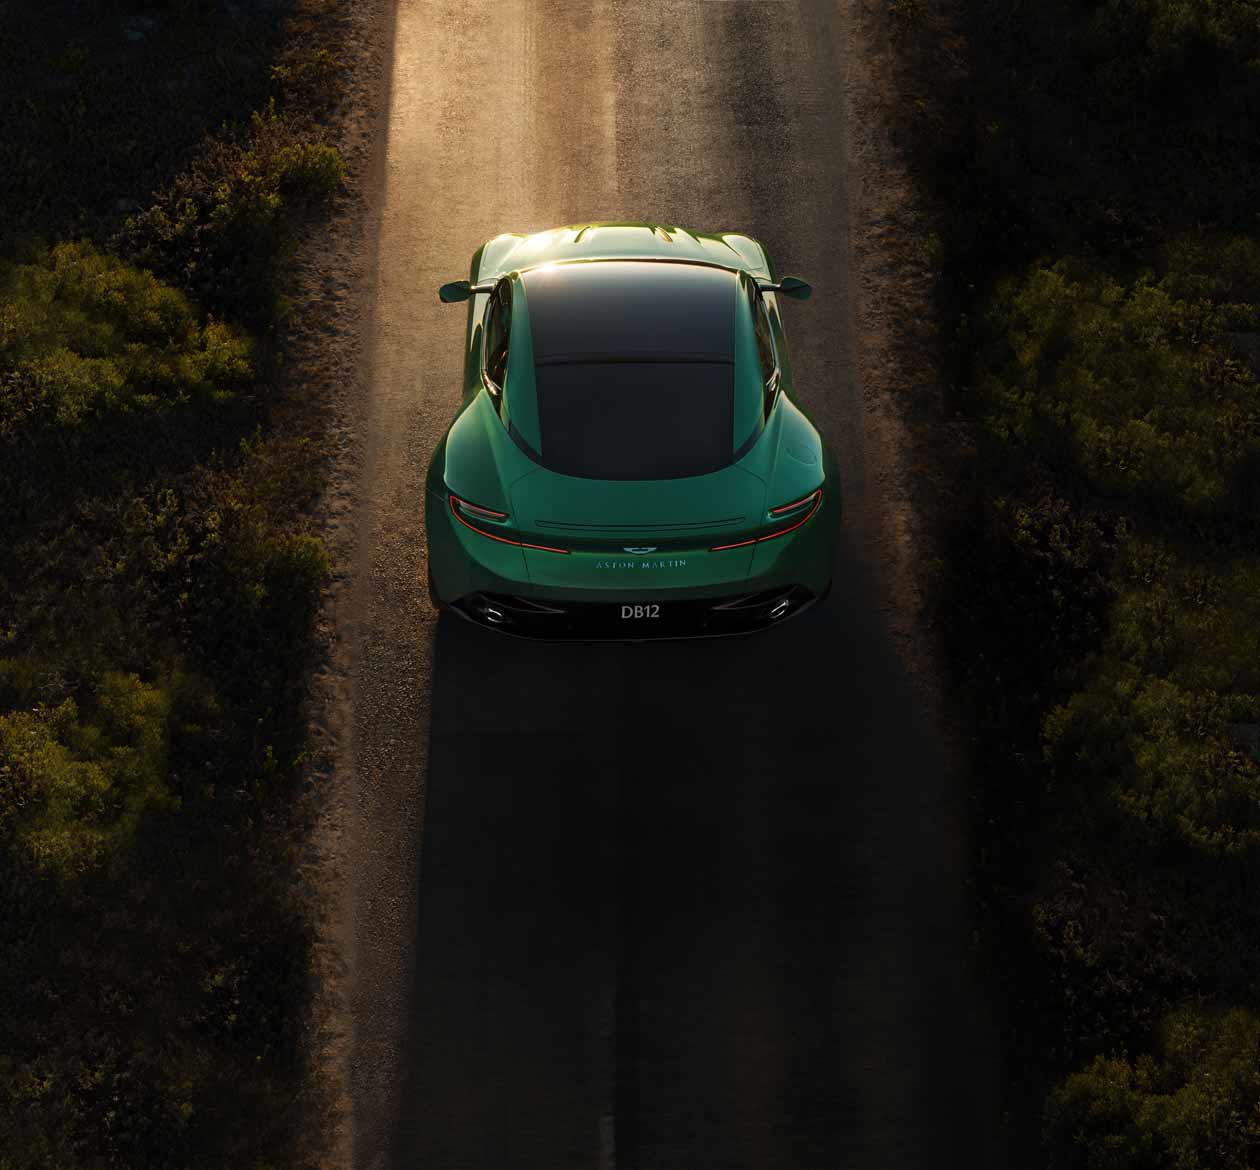 The Aston Martin DB12. Copyright © Aston Martin.